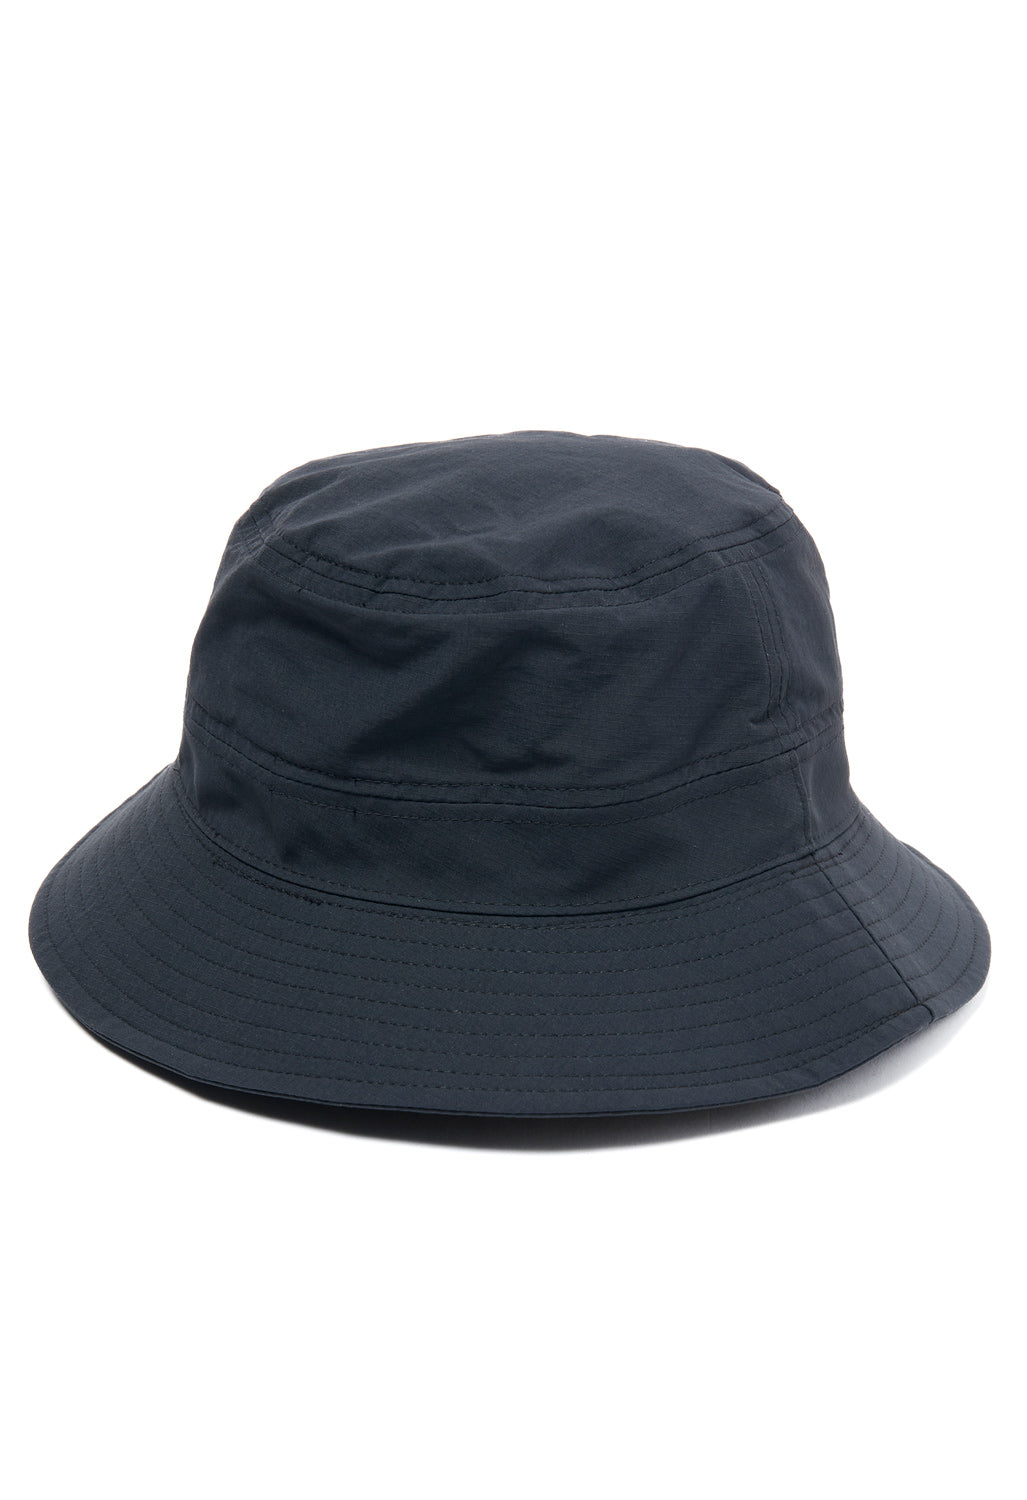 Haglofs LX Hat - True Black